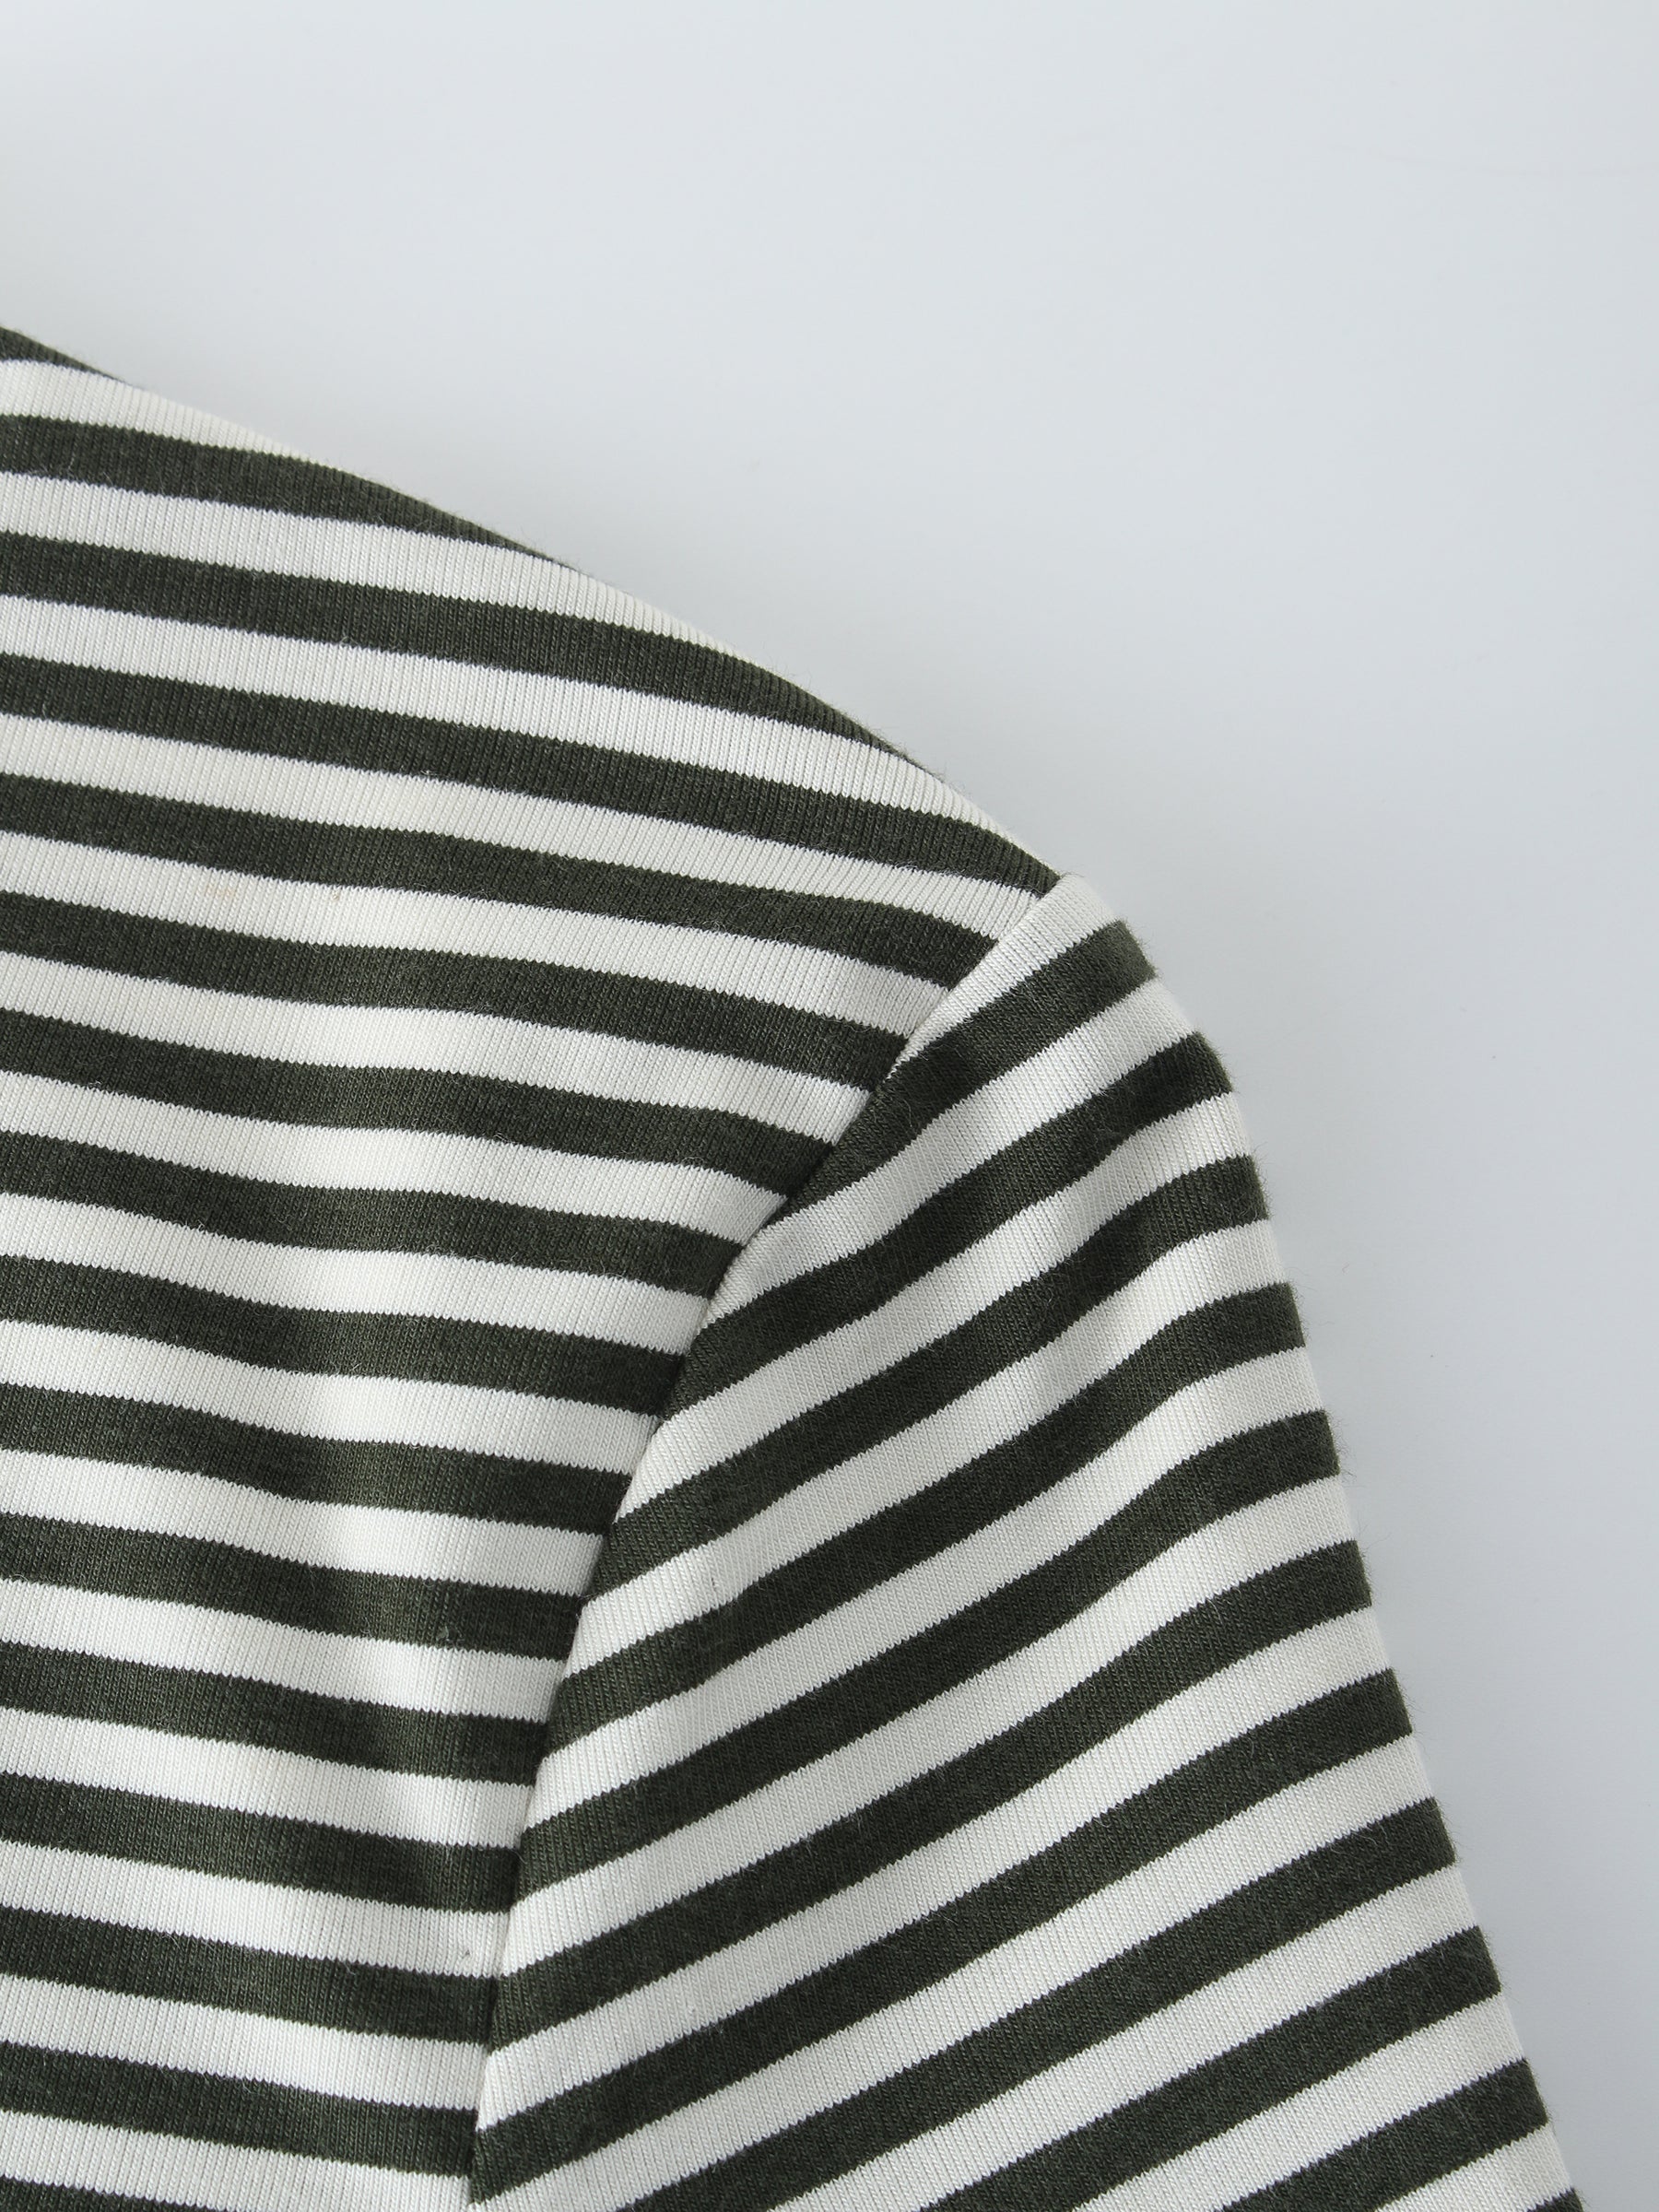 Camiseta Thin Stripe High V-Negro/Blanco